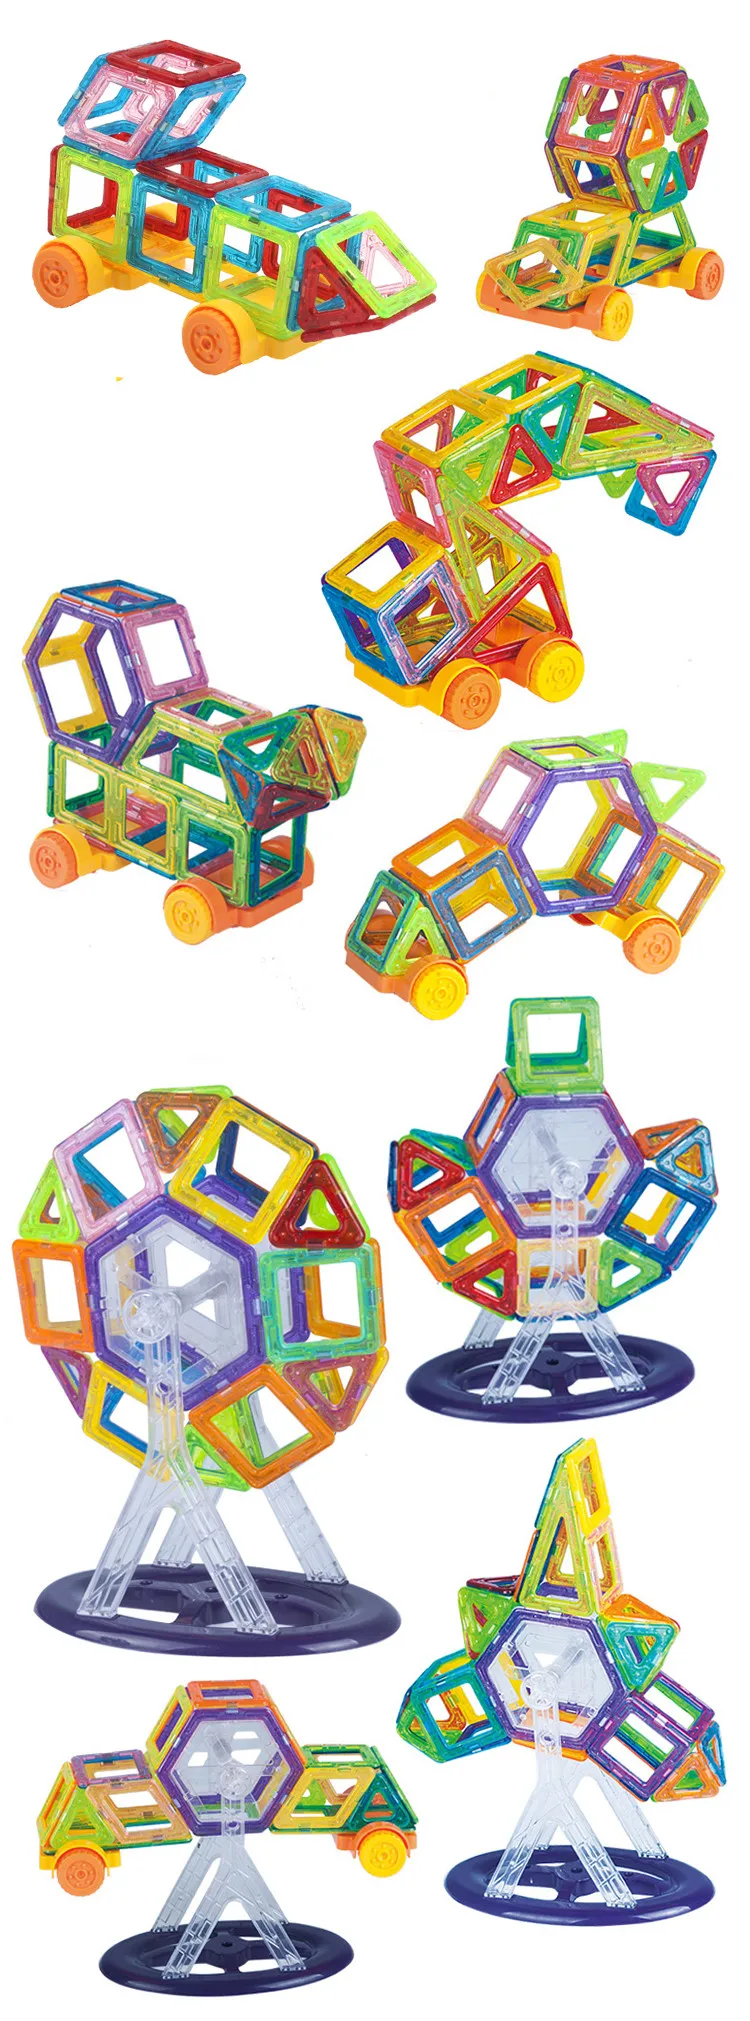 Мини дизайнерский набор Магнитный строительный Конструкторы развивающие магнитные плитки комплект Магнитная конструкция формы игрушки набор для детей подарок